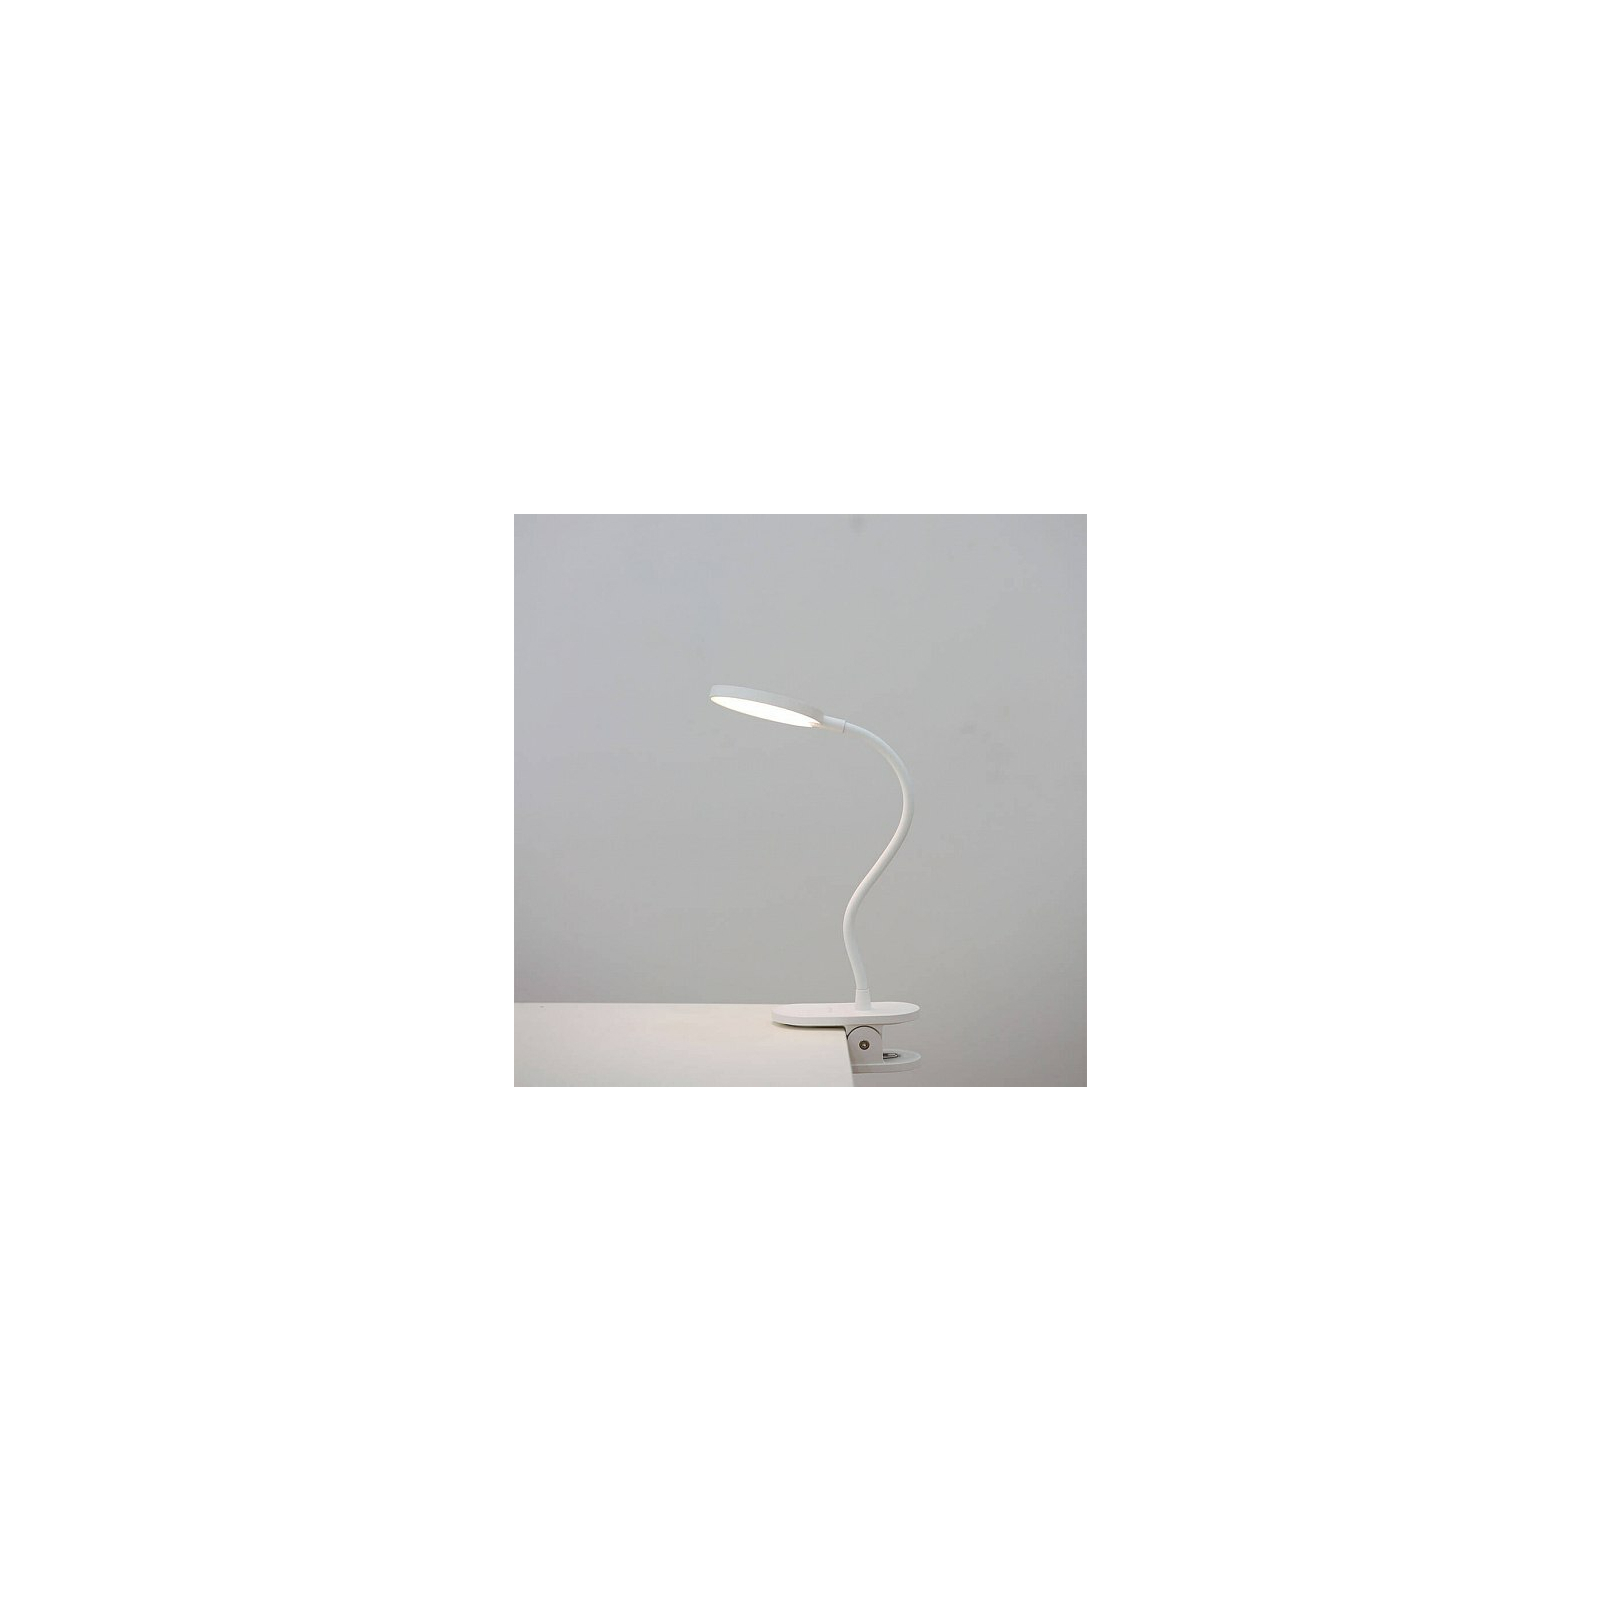 Настільна лампа Yeelight J1 LED Clip-On Table Lamp 150 (YLTD10YL) зображення 7